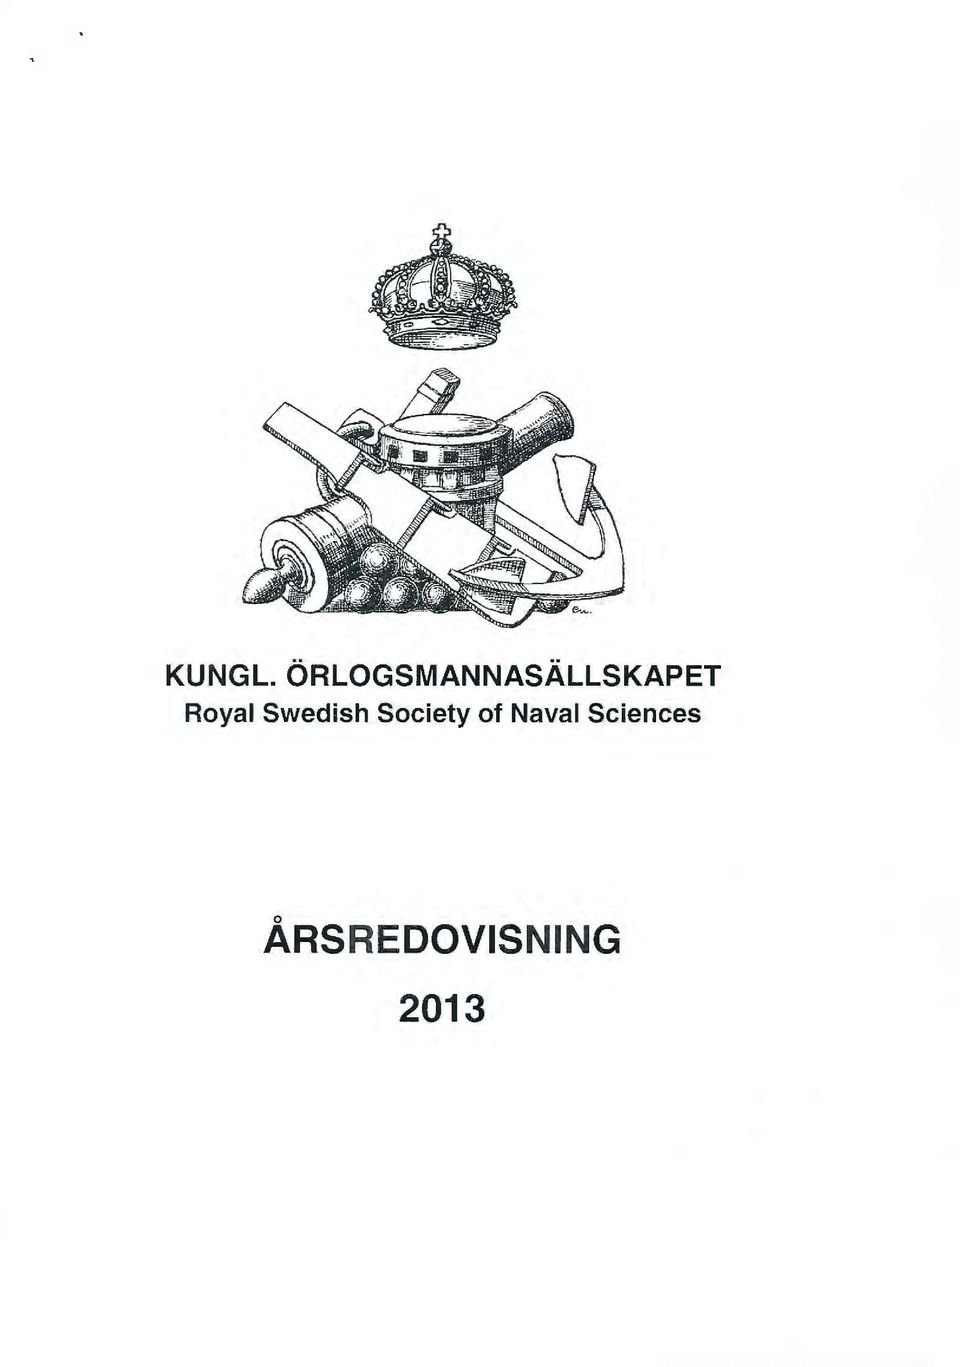 Royal Swedish Society